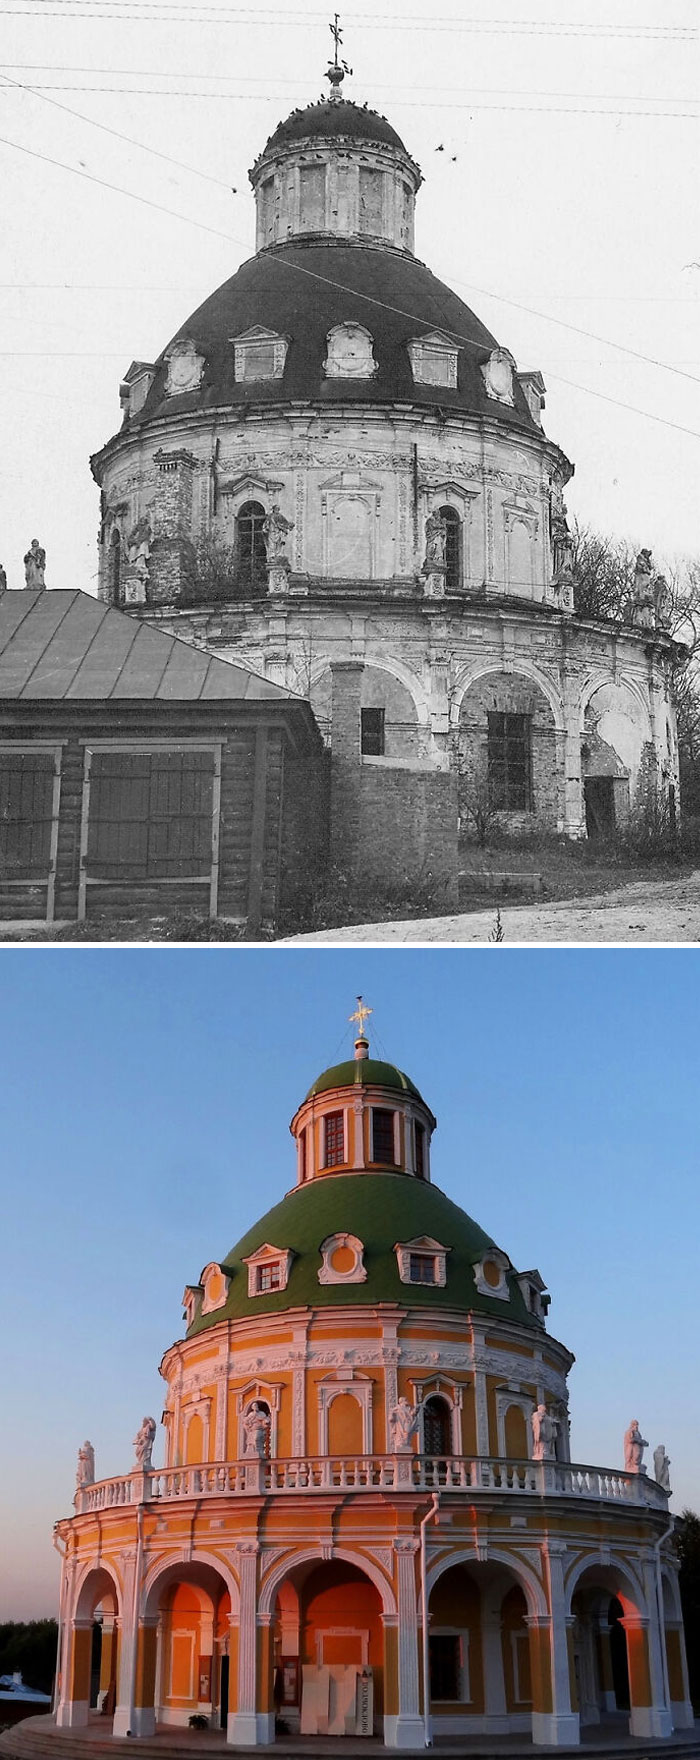 Restoration Of A Church In Podmoklovo, Russia